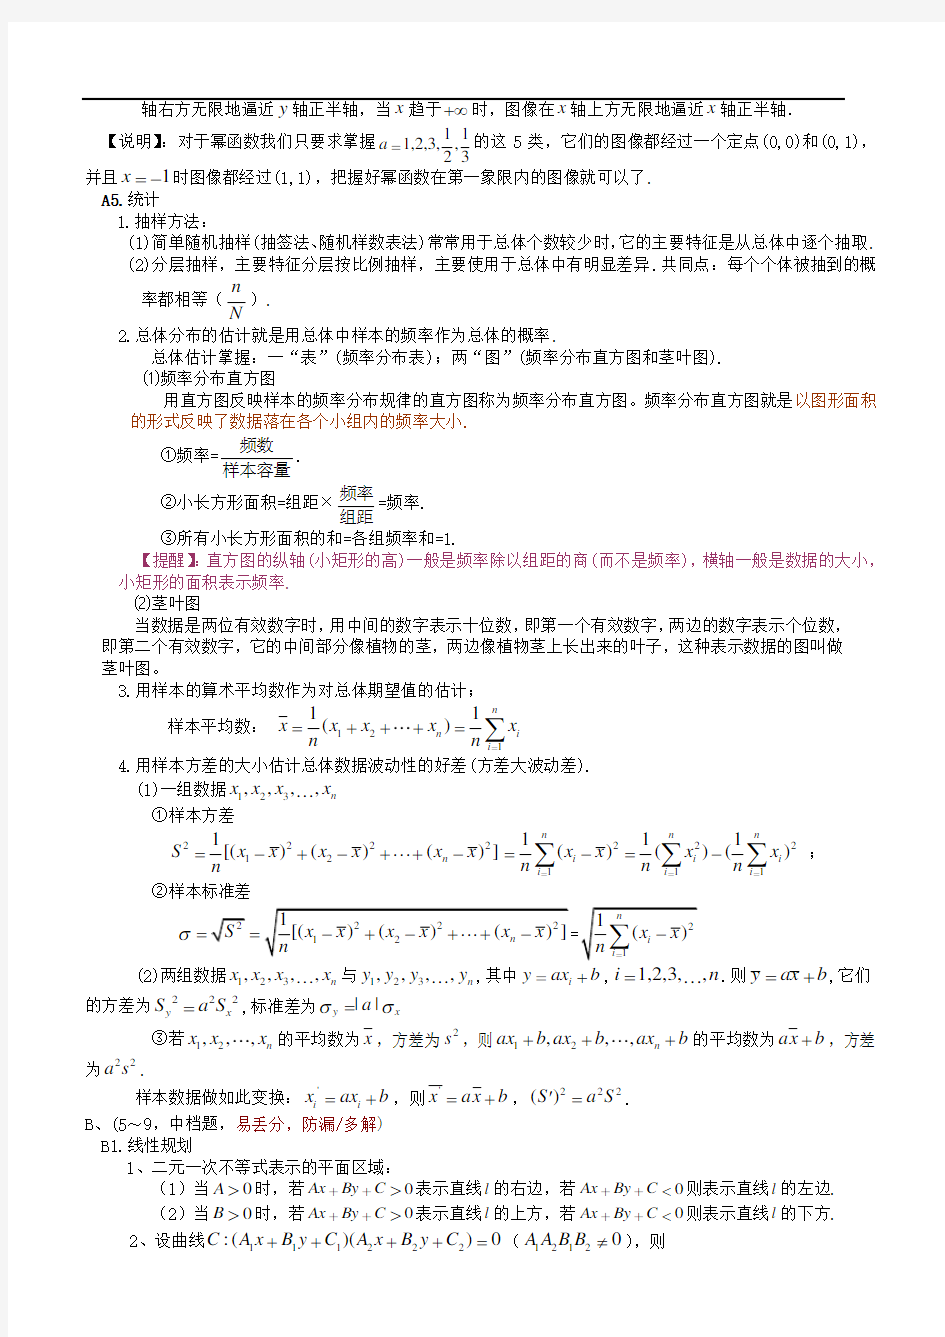 湖北省高考数学复习知识点按难度与题型归纳(数学应试笔记)